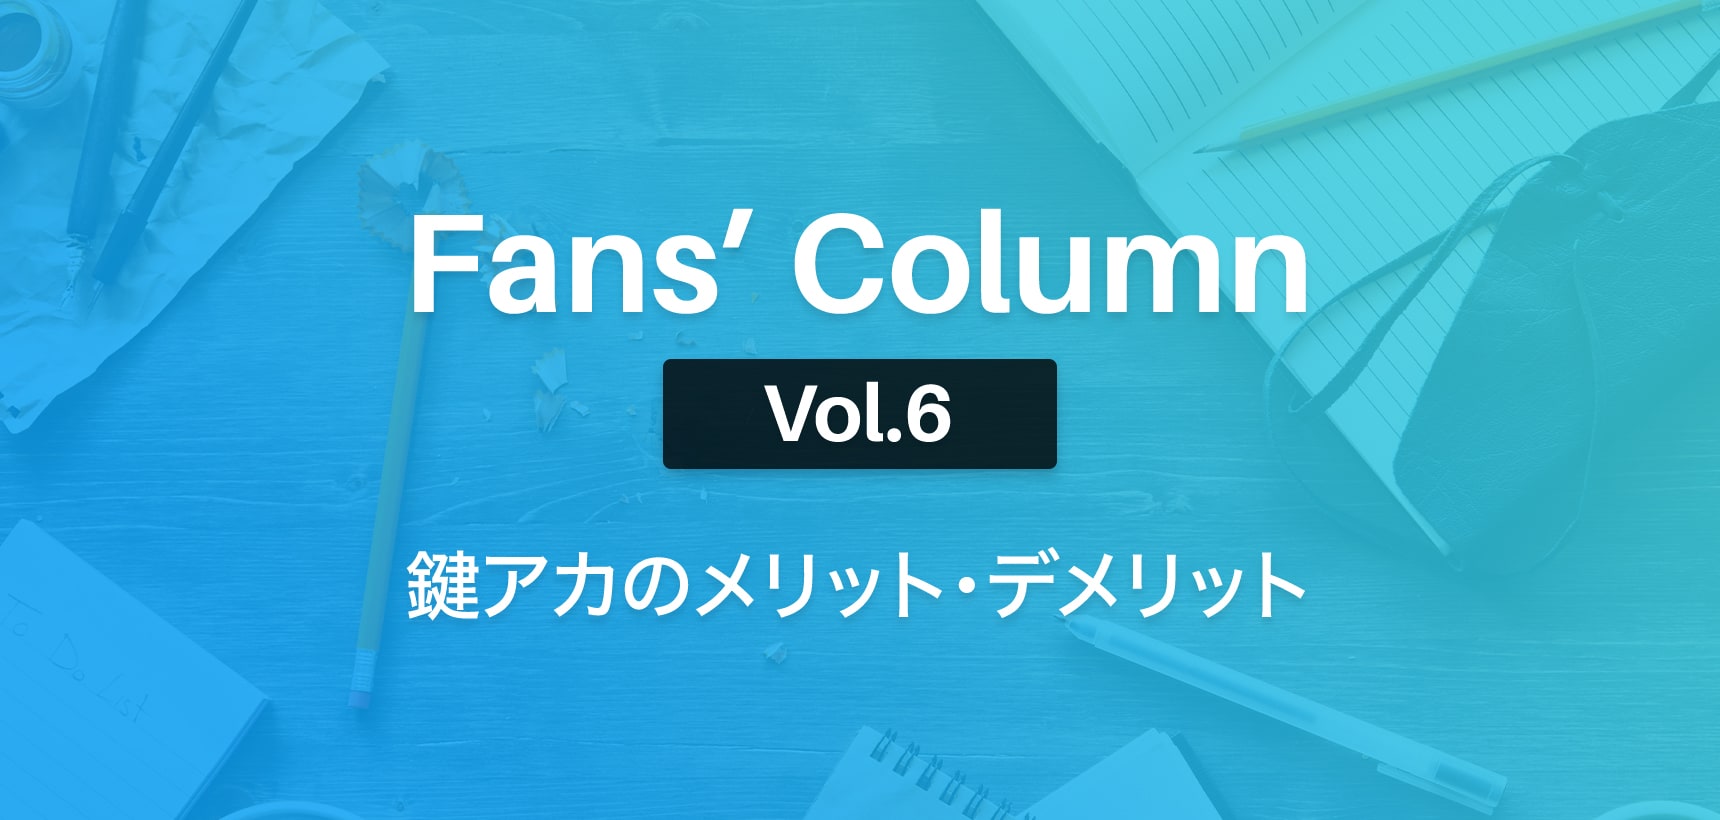 Fans’ Column | ファンズコラム Vol.6 Twitterで鍵アカウントにする際のメリット・デメリット　それでもフォロワーを増やすには？